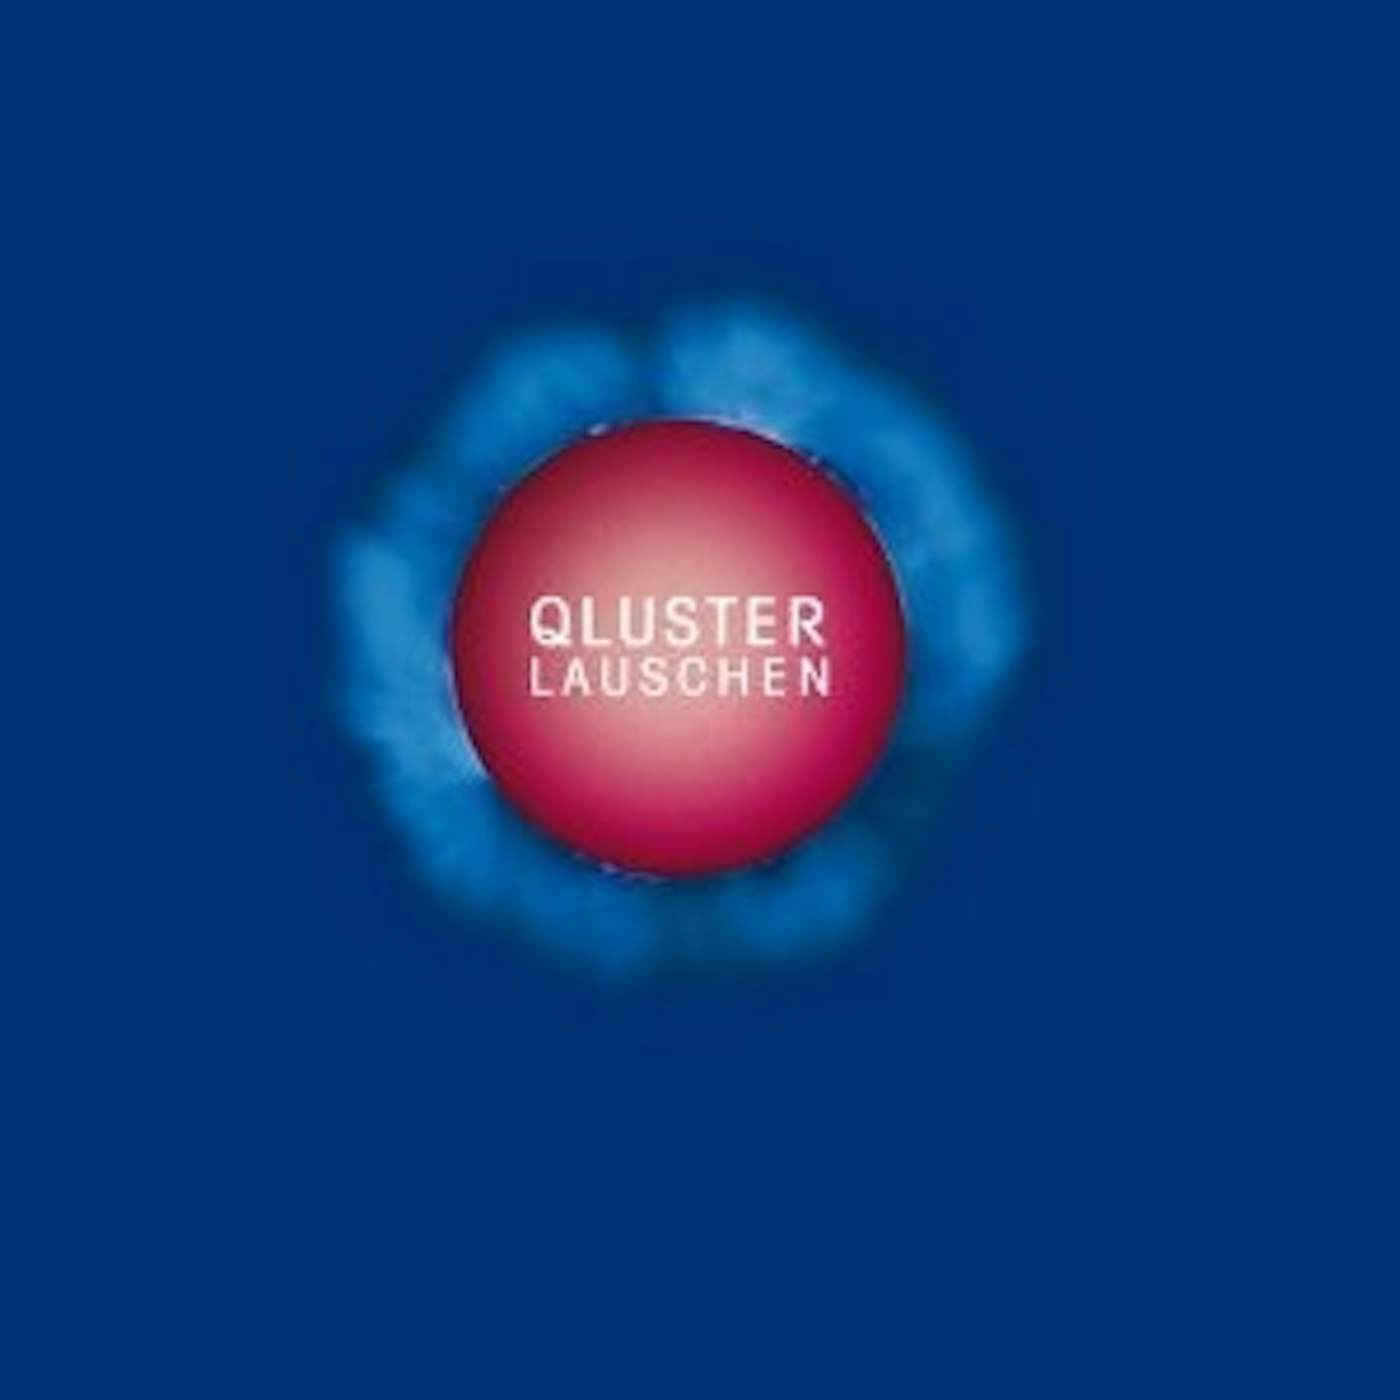 Qluster Lauschen Vinyl Record